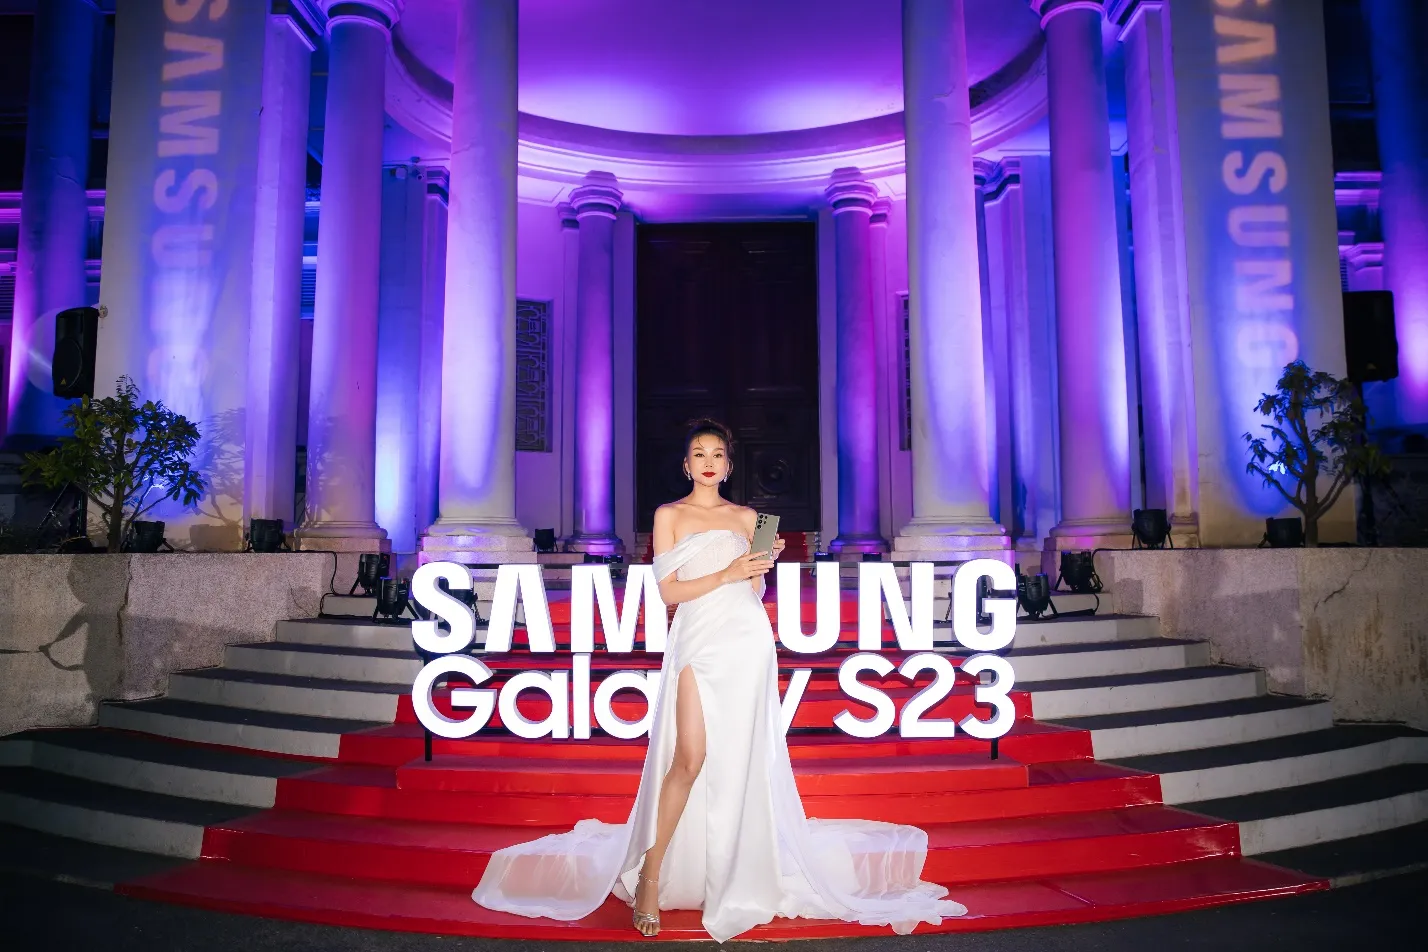 SPACE 23 - “Note Tiếp Quyền Năng”: Samsung tri ân người dùng Galaxy Note